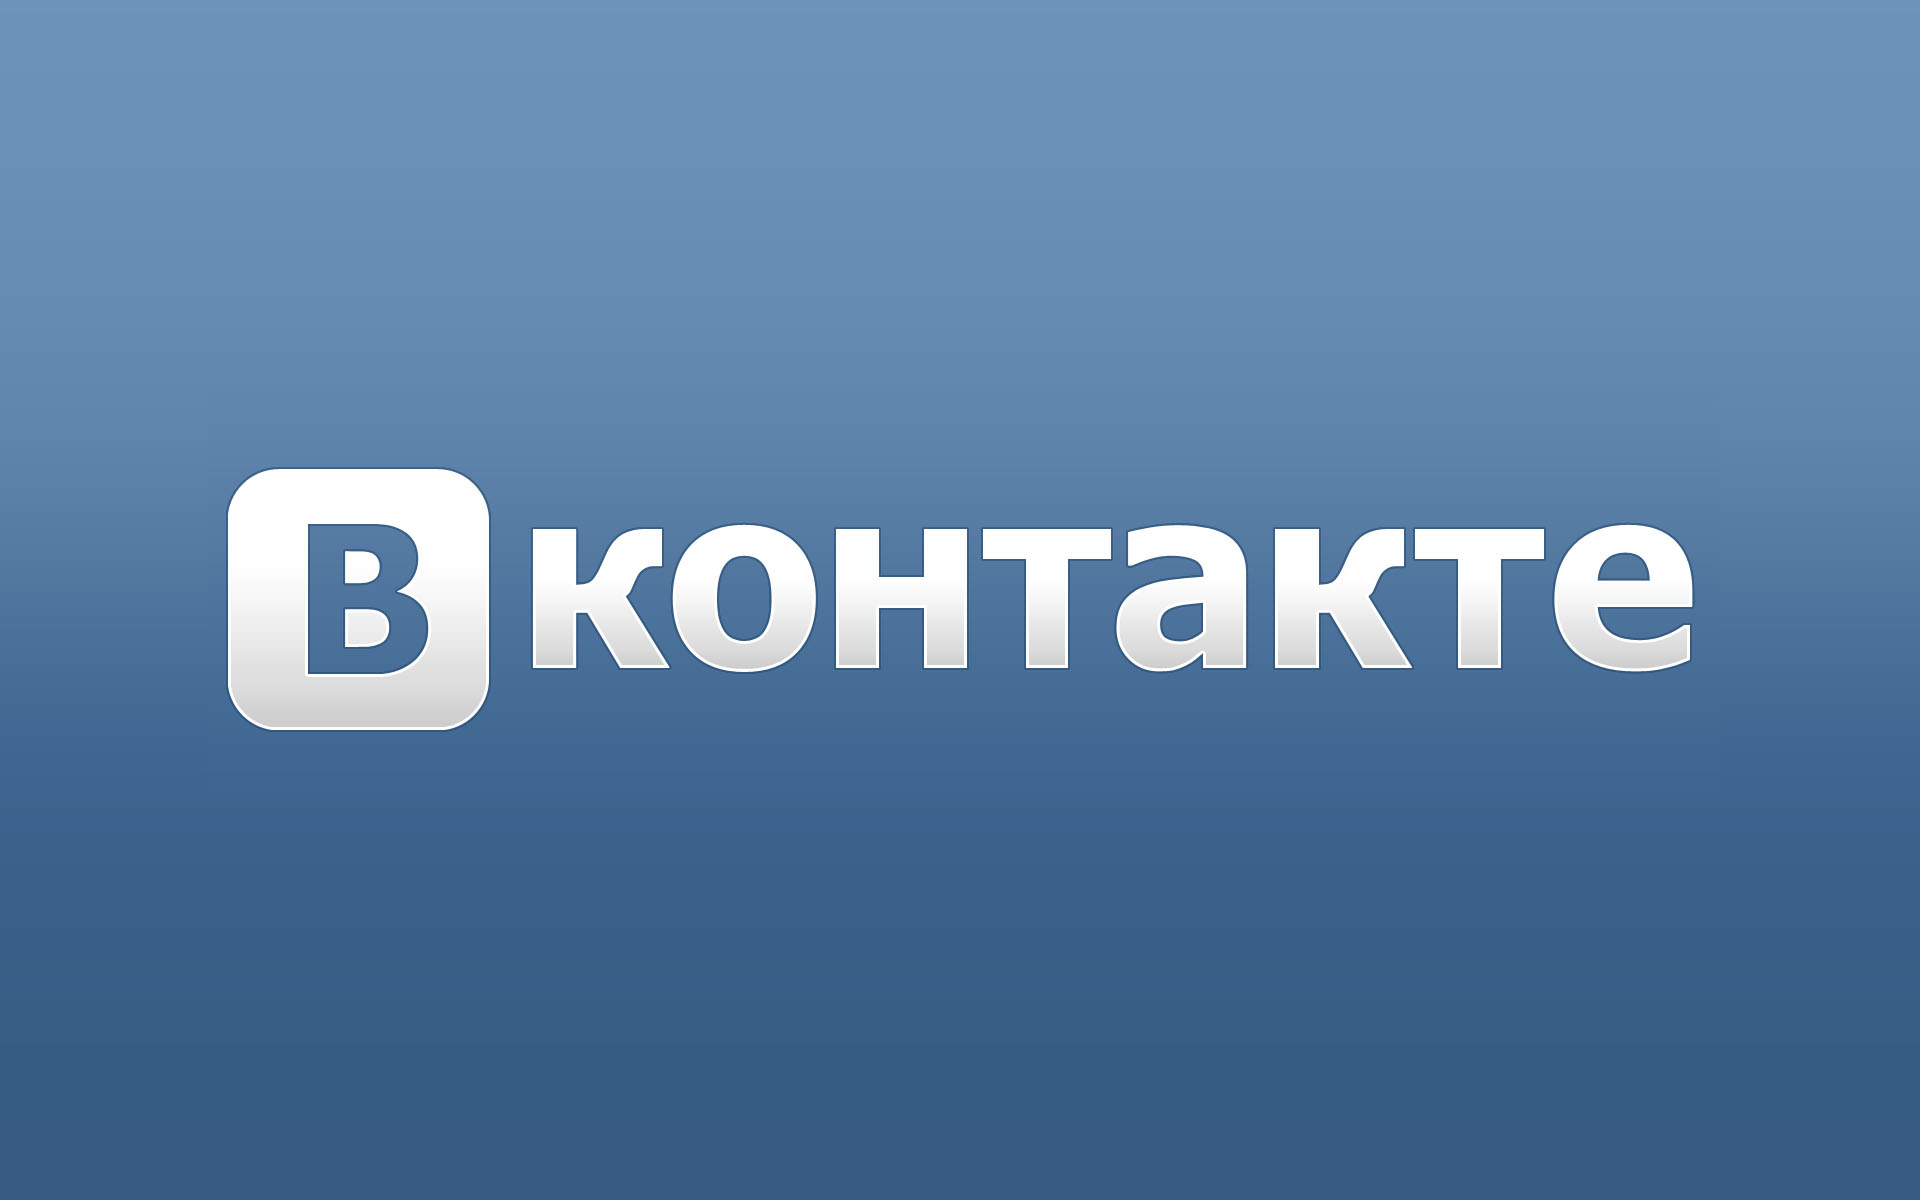 Социальная сеть Вконтакте может потерять множество пользователей по причине перехода сайта на новый дизайн